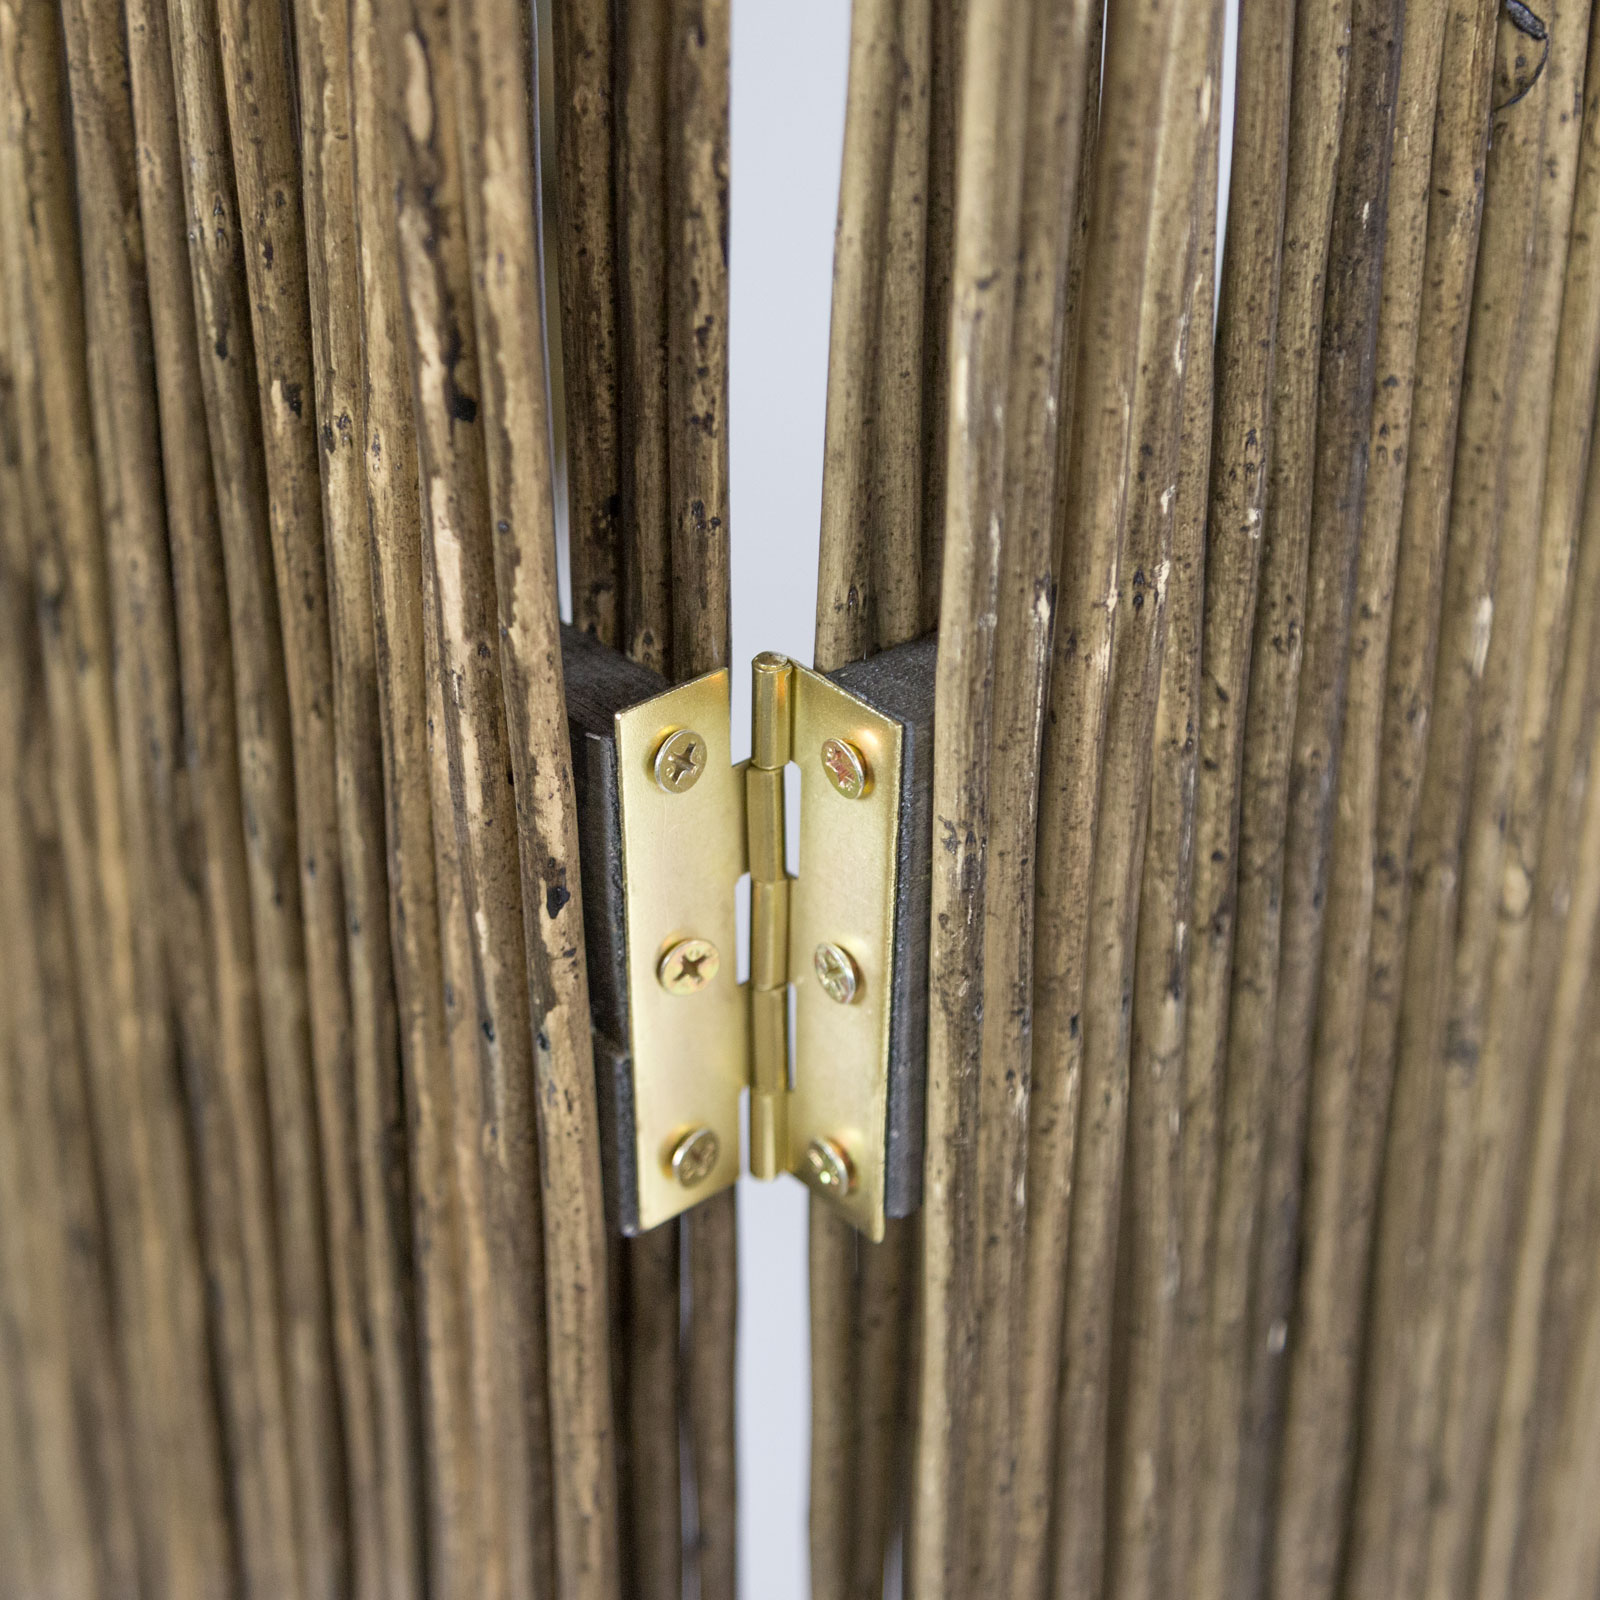 Paravent Raumteiler 3 teilig Holz Trennwand Sichtschutz Weidenparavent Grau